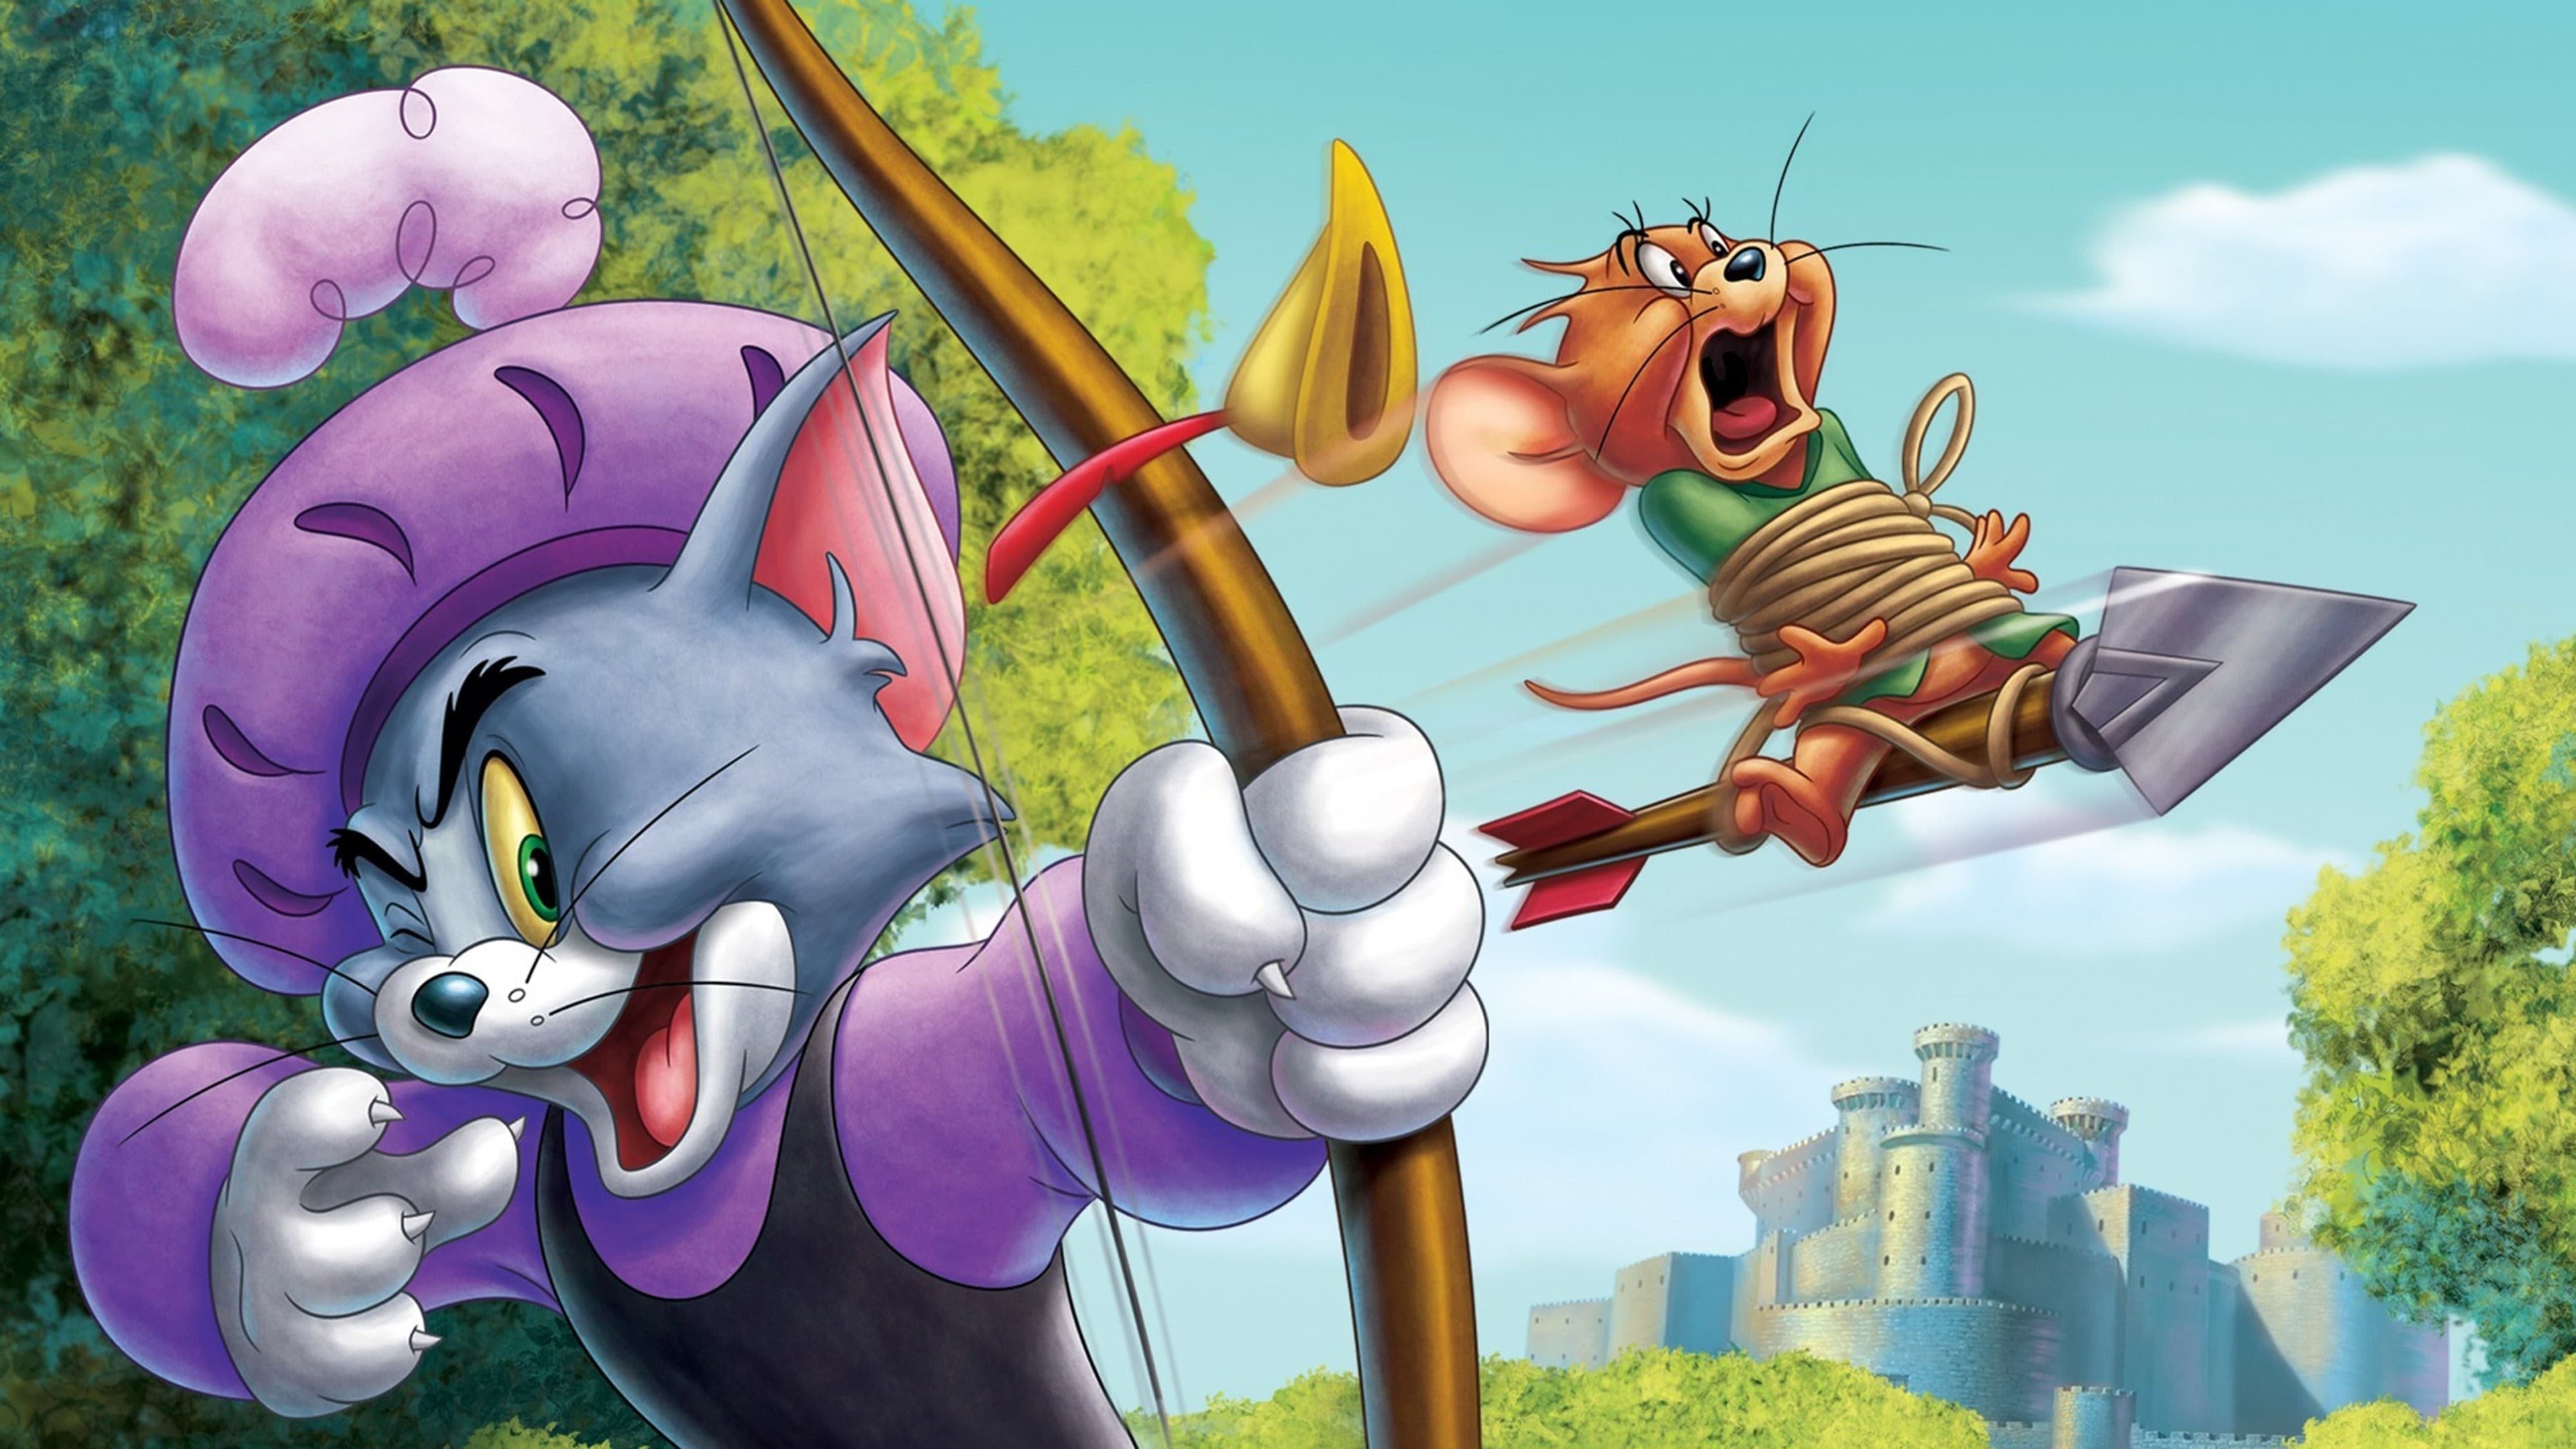 Том и Джерри: Робин Гуд и его веселый мышонок (2012)